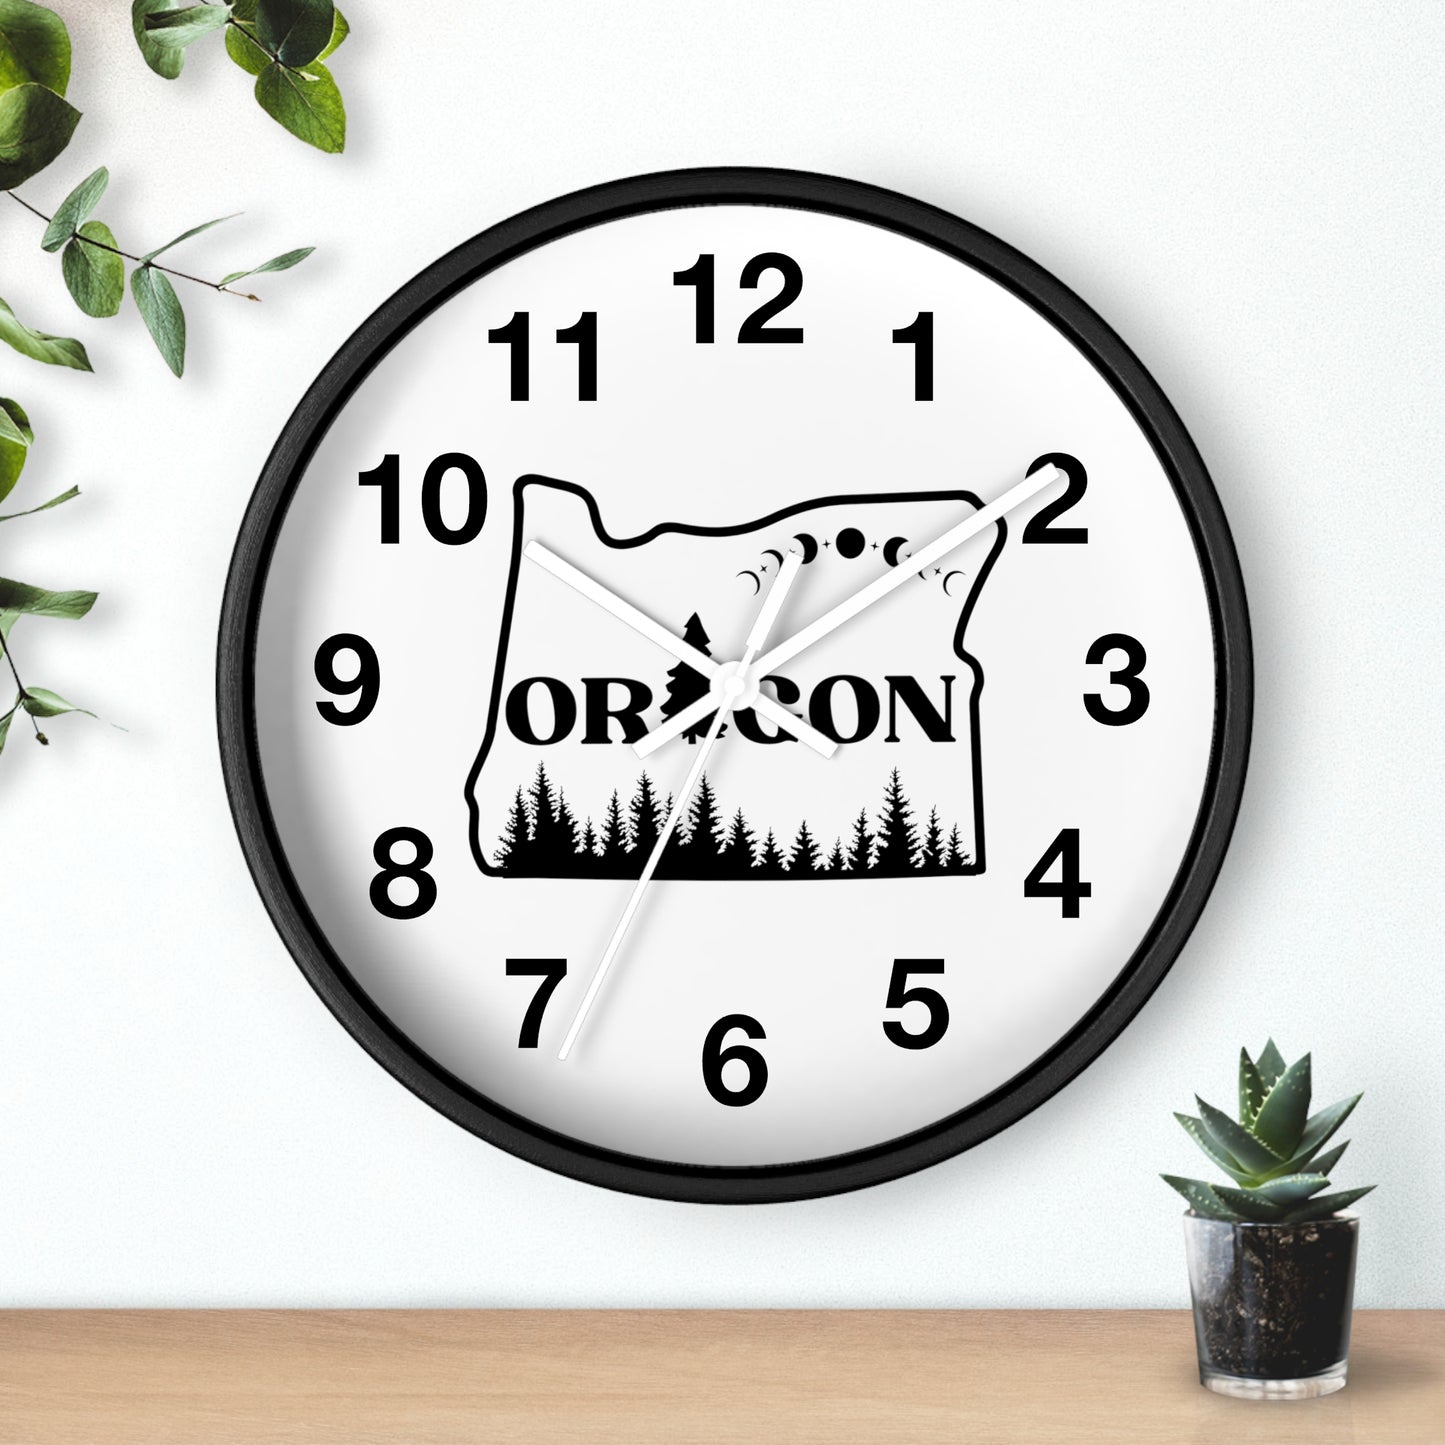 Oregon Wall clock